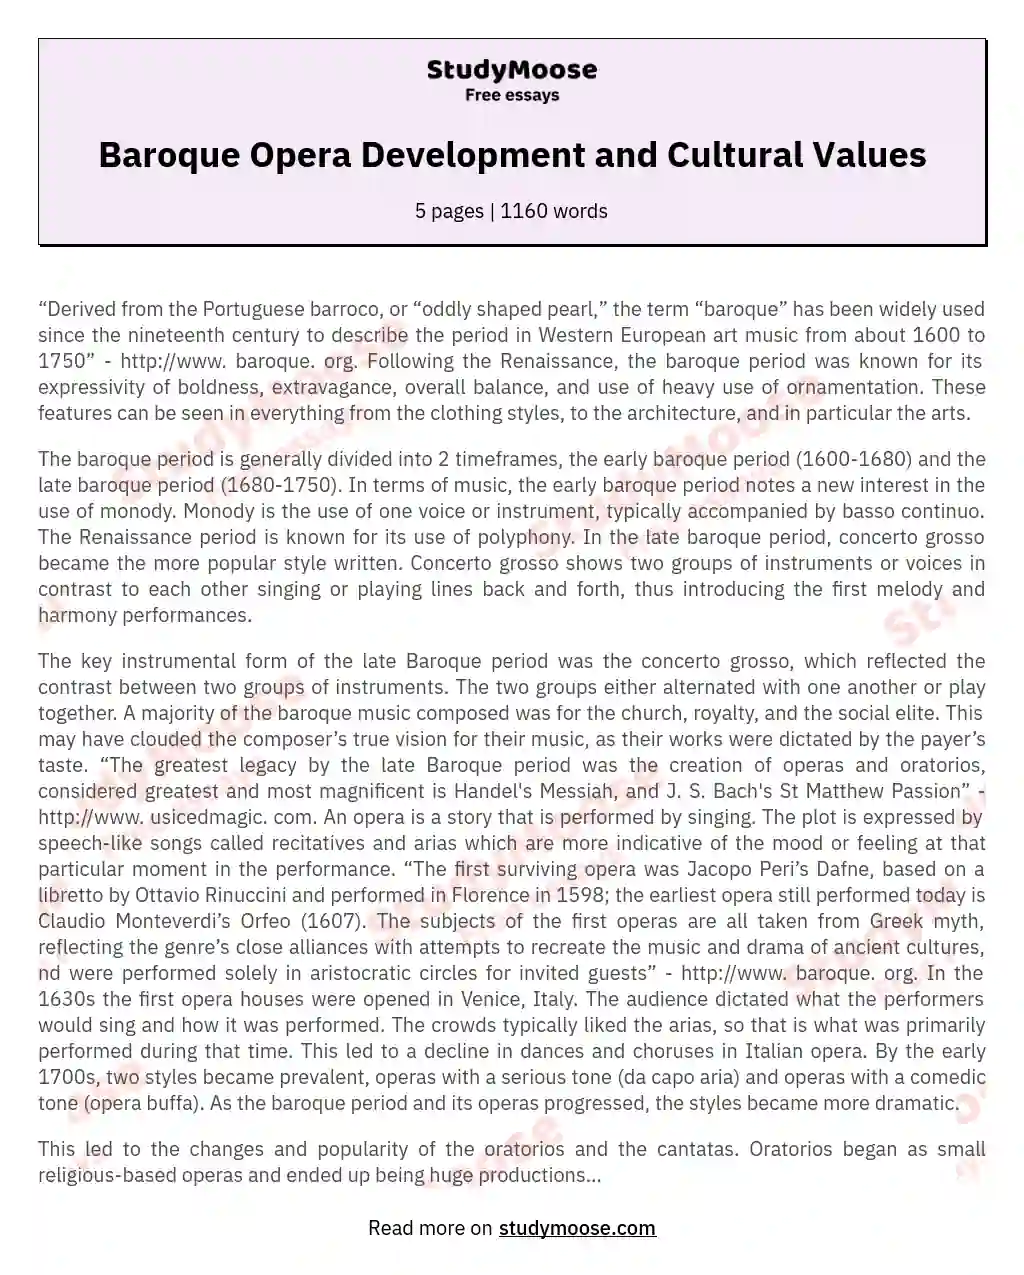 Baroque Opera Development and Cultural Values essay